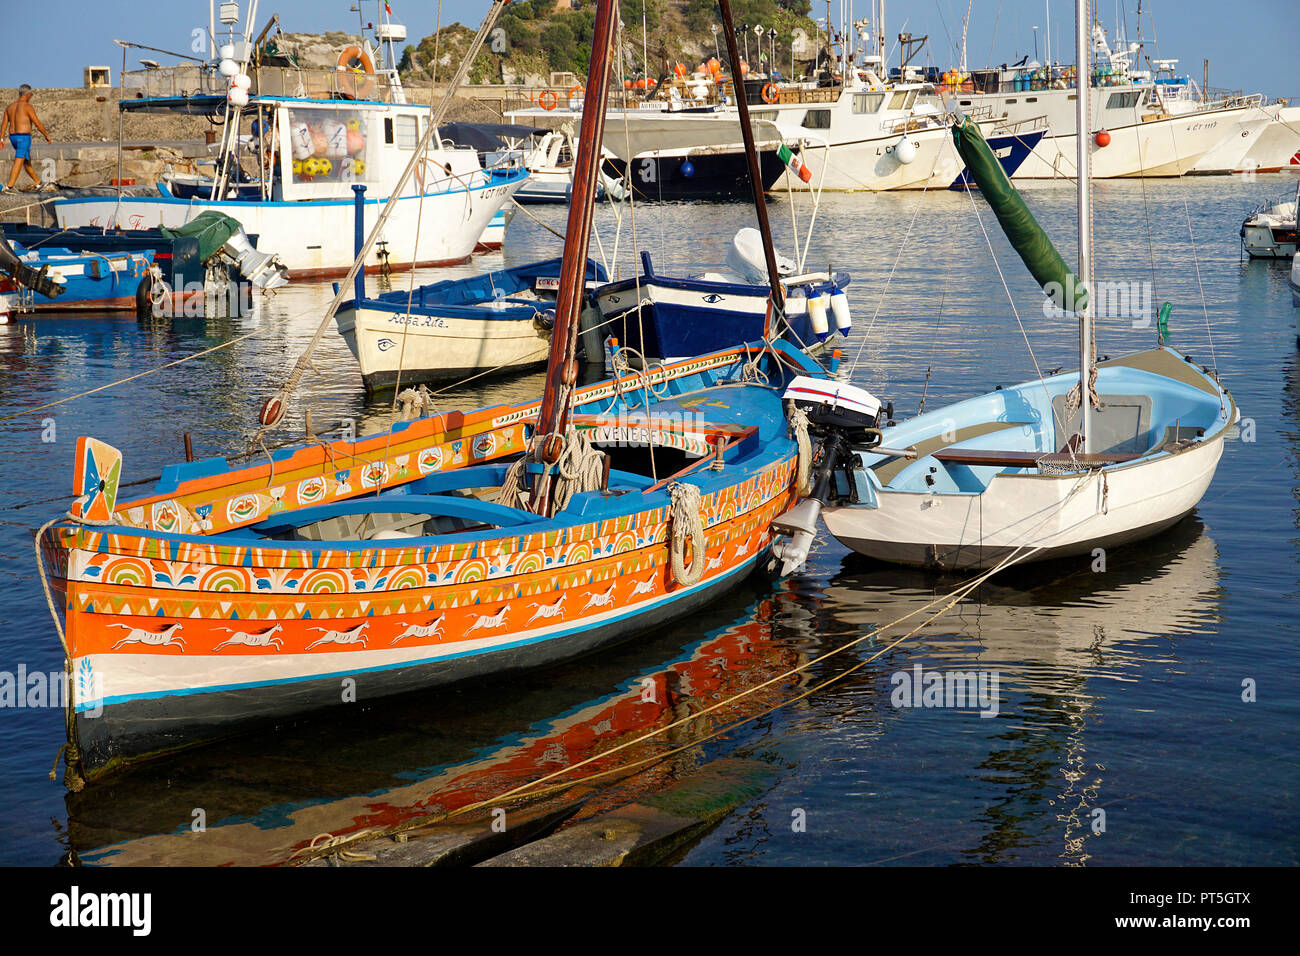 Verniciato colorato la pesca in barca al porto del villaggio di pescatori di Aci Trezza, comune di Aci Castello, Catania, Sicilia, Italia Foto Stock